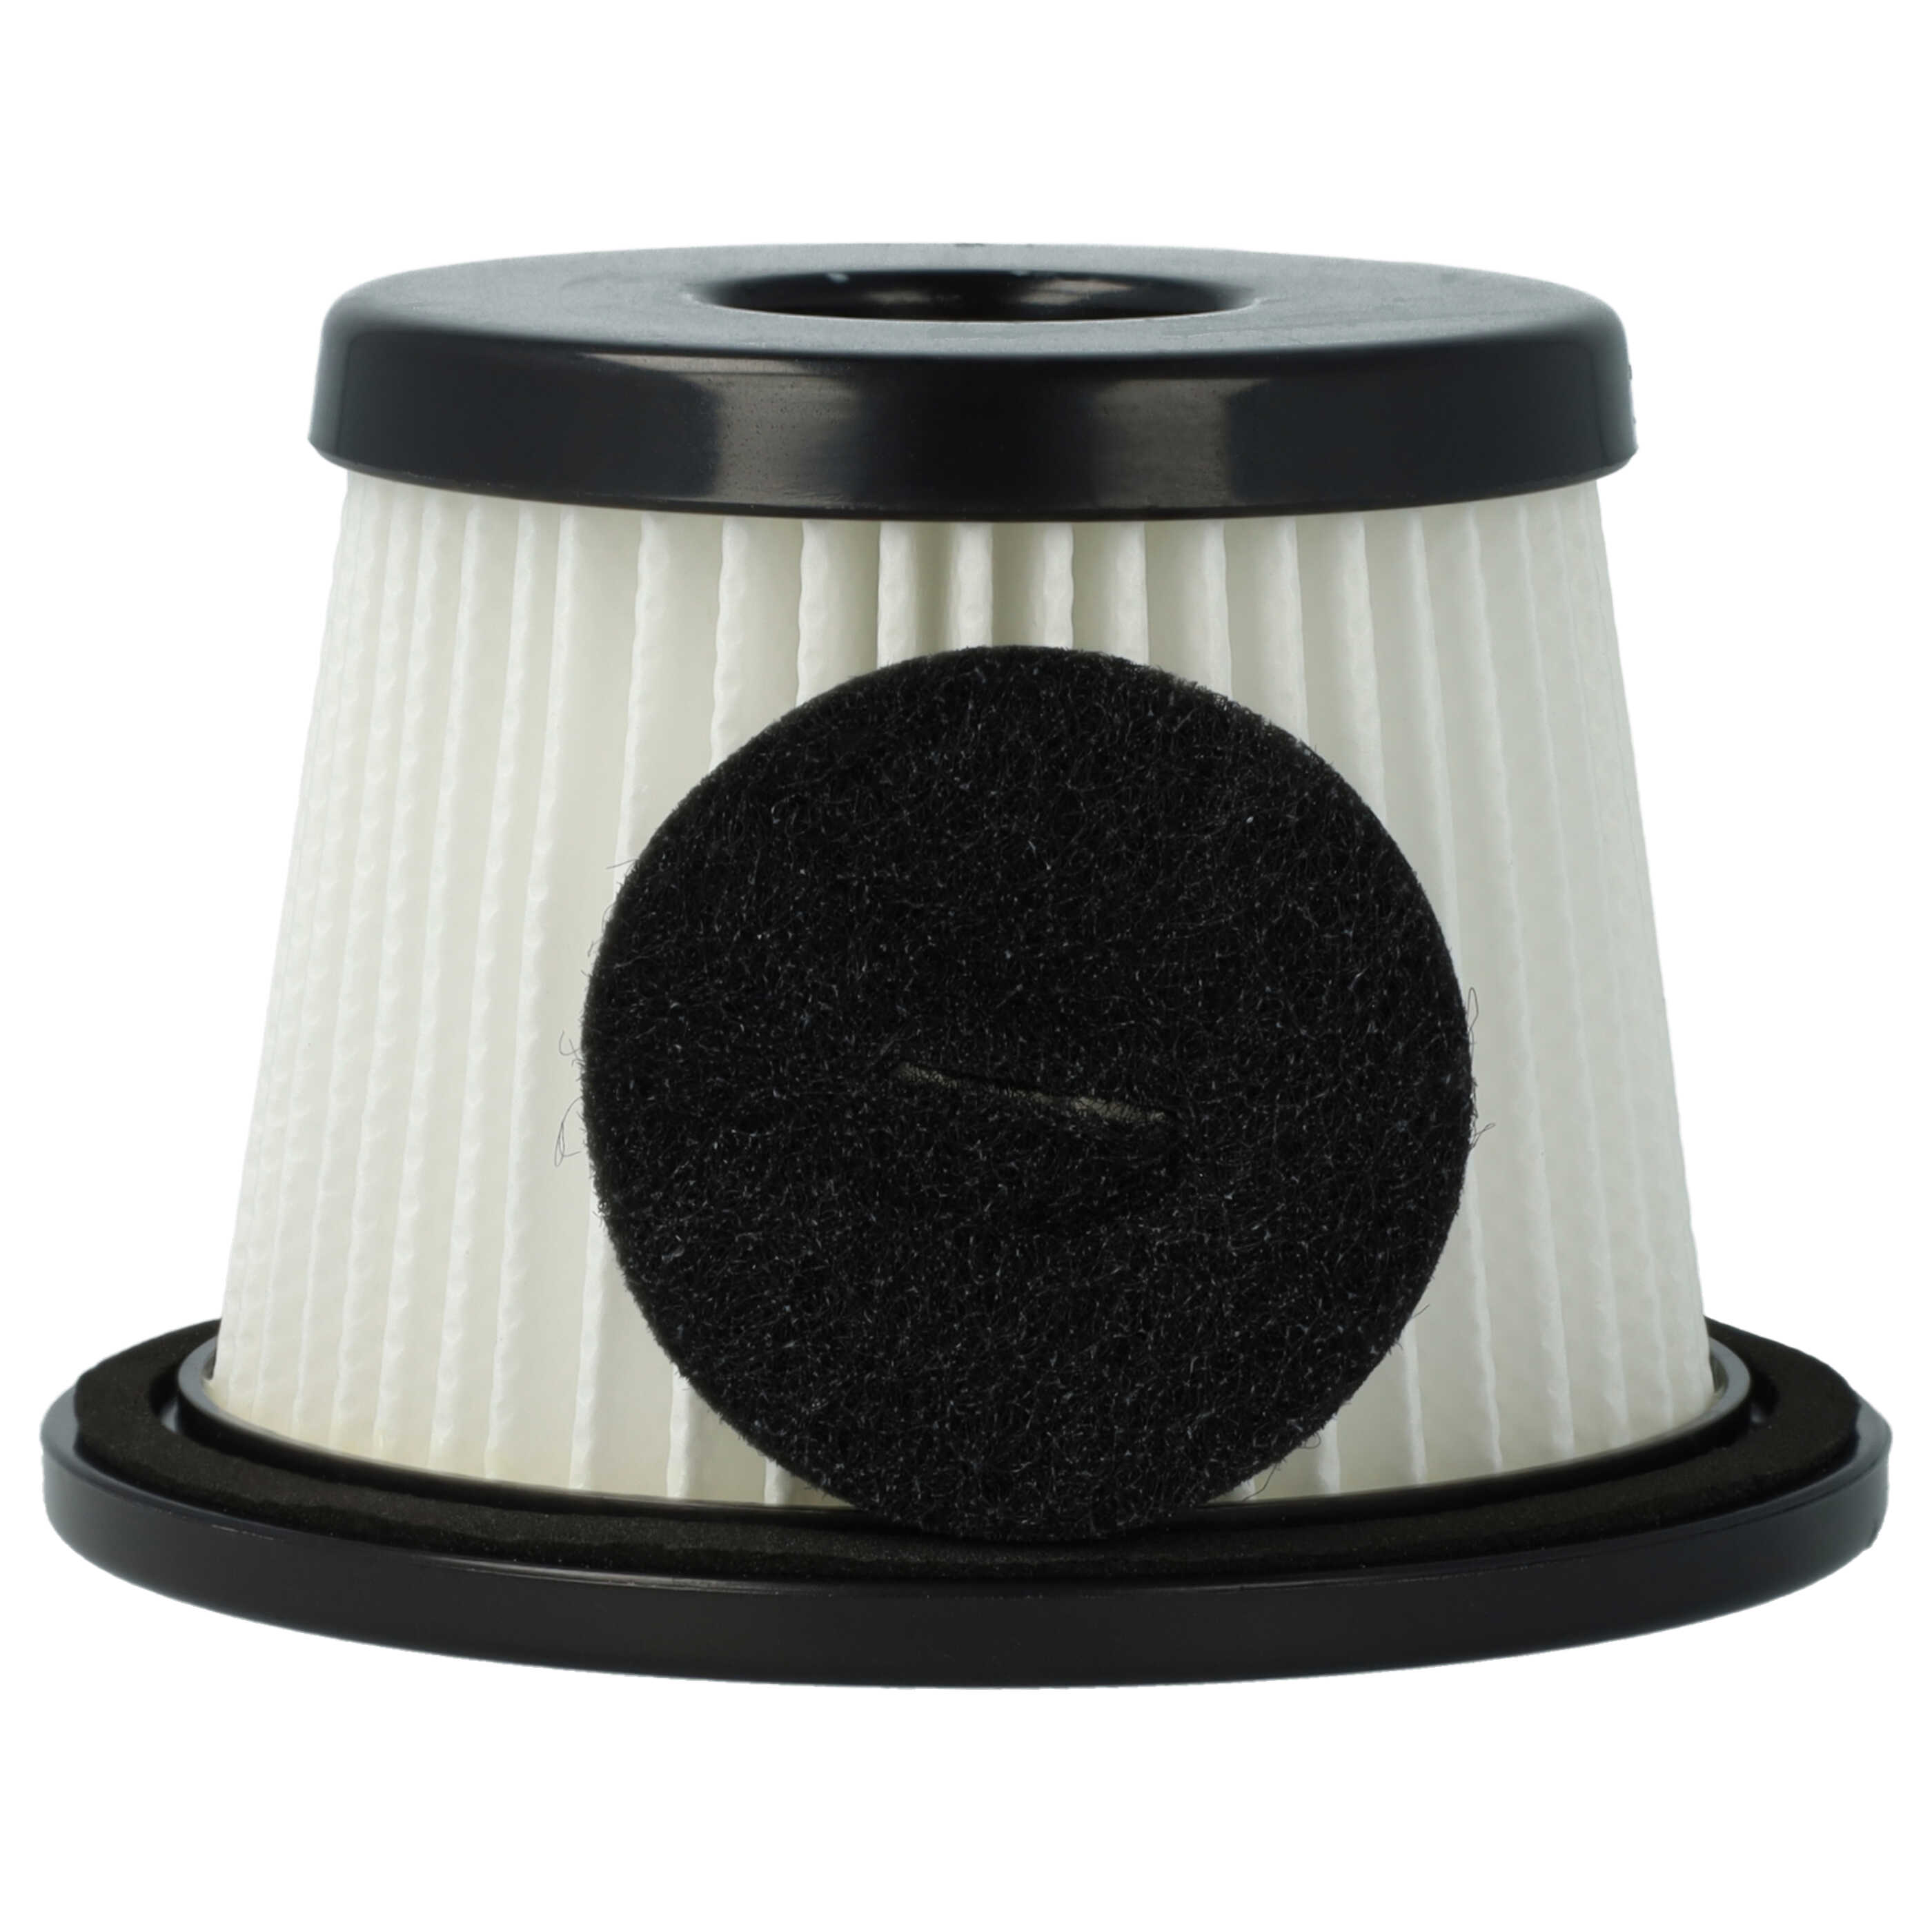 3x Filtro para aspiradora Moosoo K24 - filtro Hepa negro / blanco